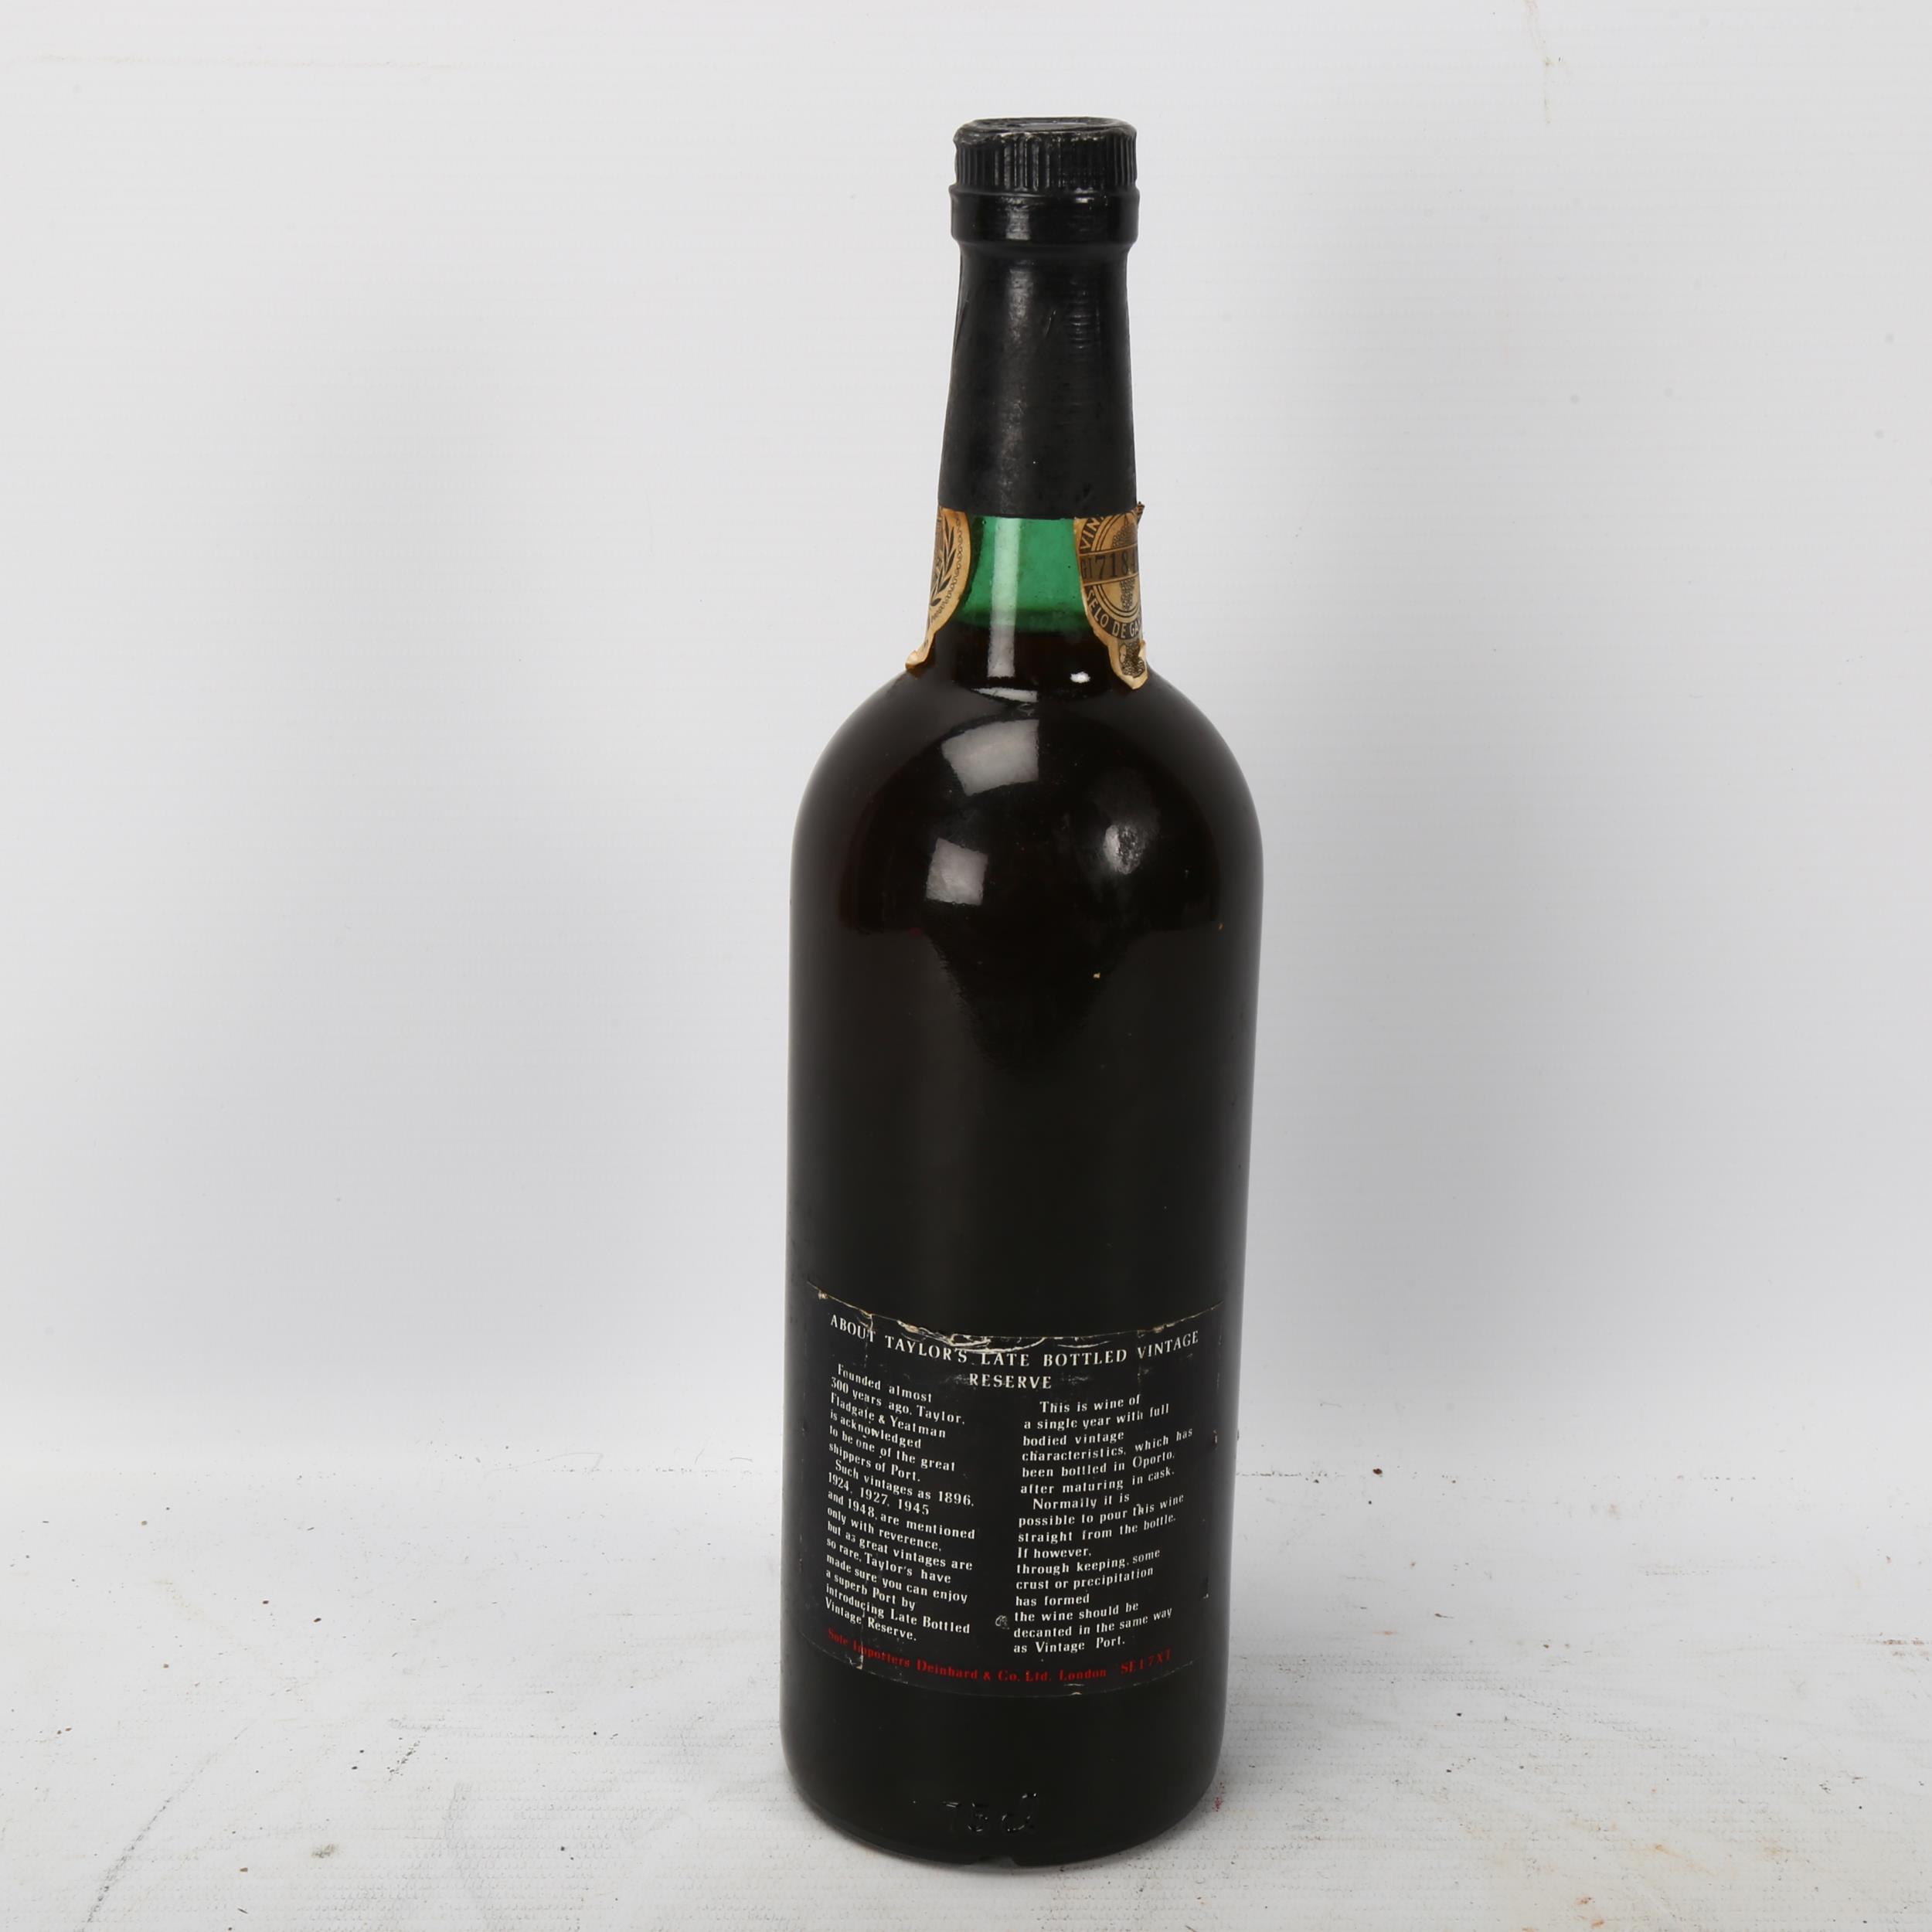 A bottle of Taylors 1969 Late Bottled Vintage Port - Image 3 of 3